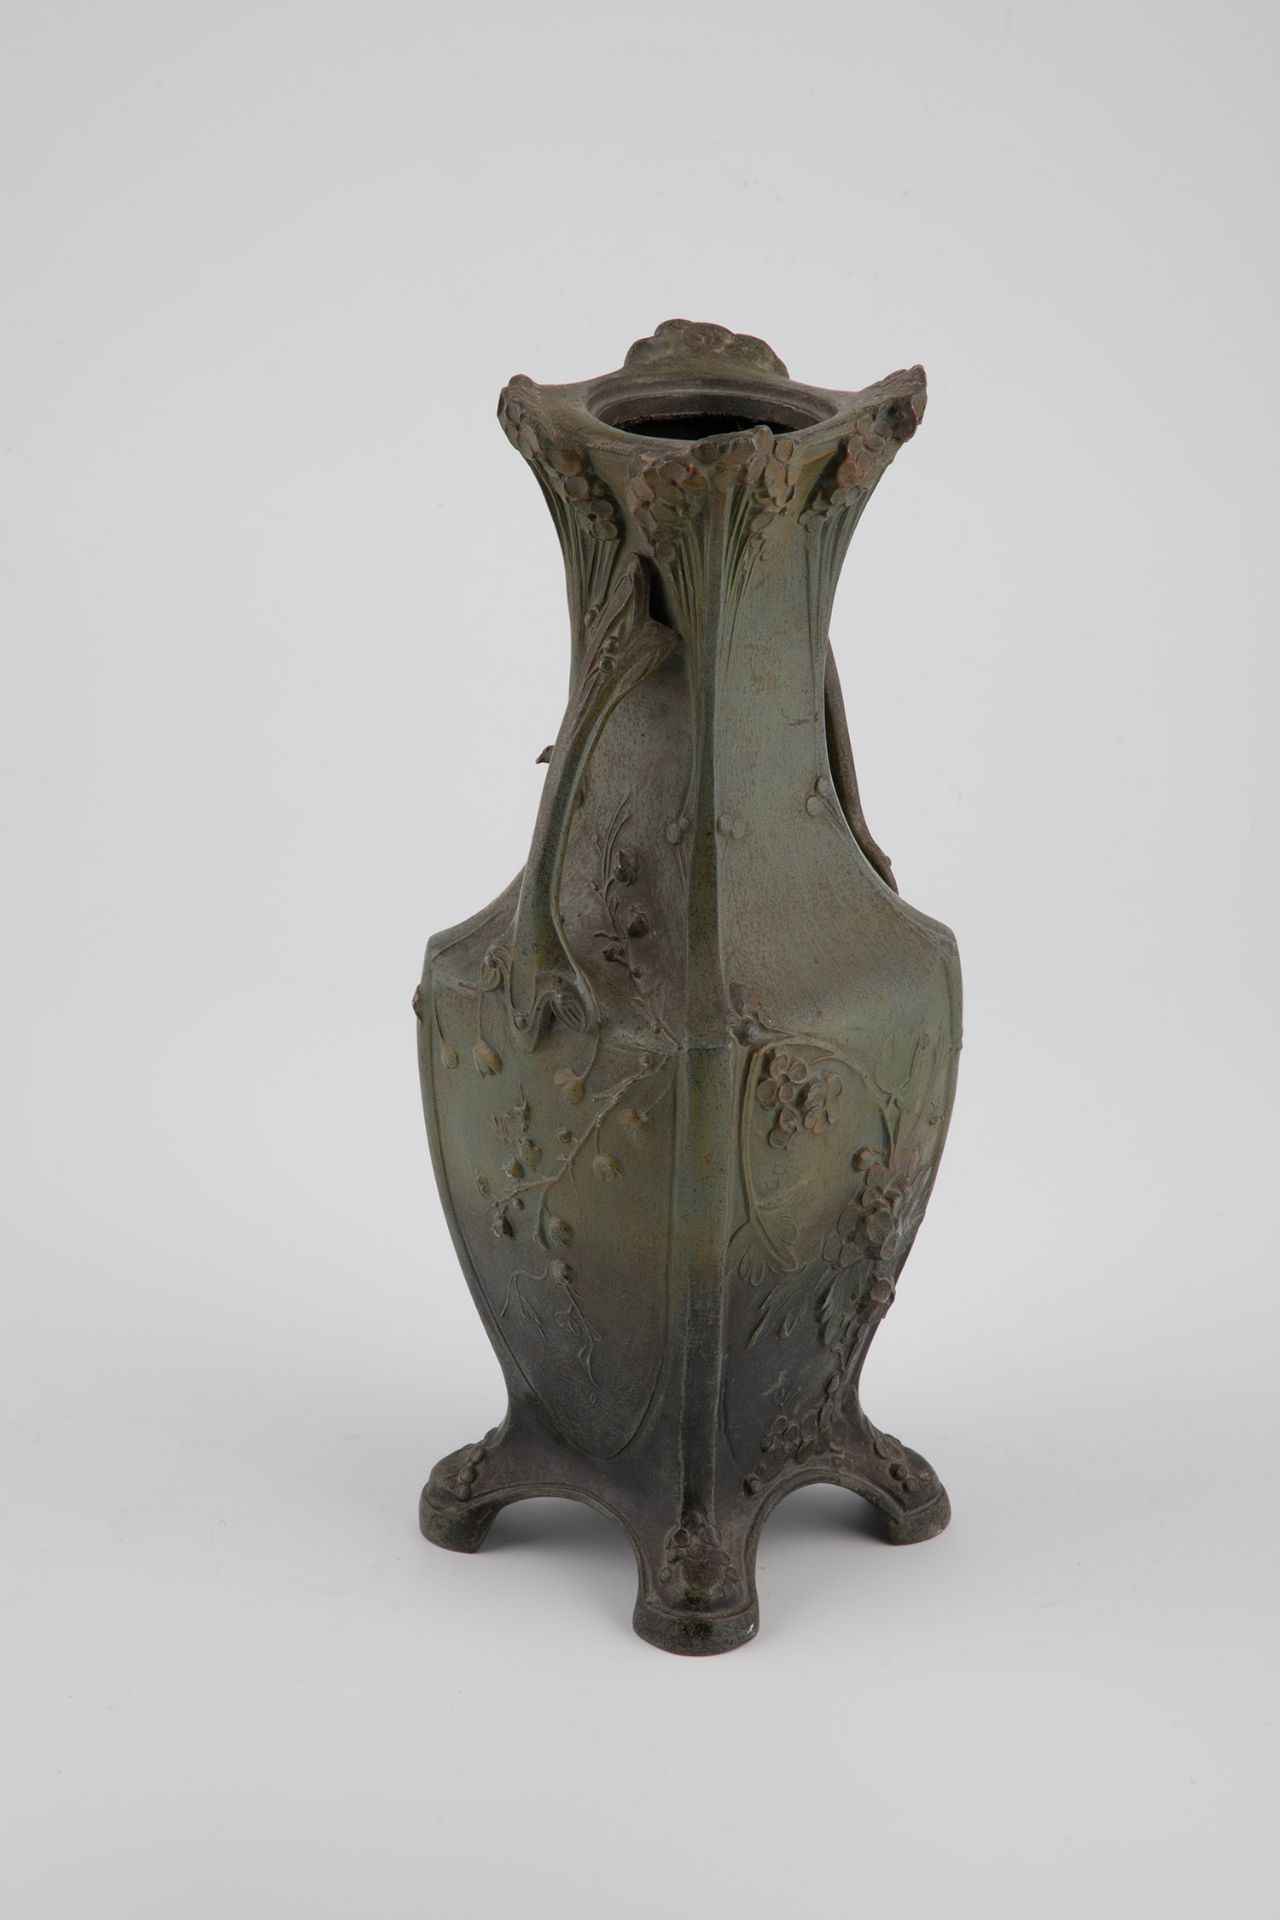 Art Nouveau vase - Image 2 of 3